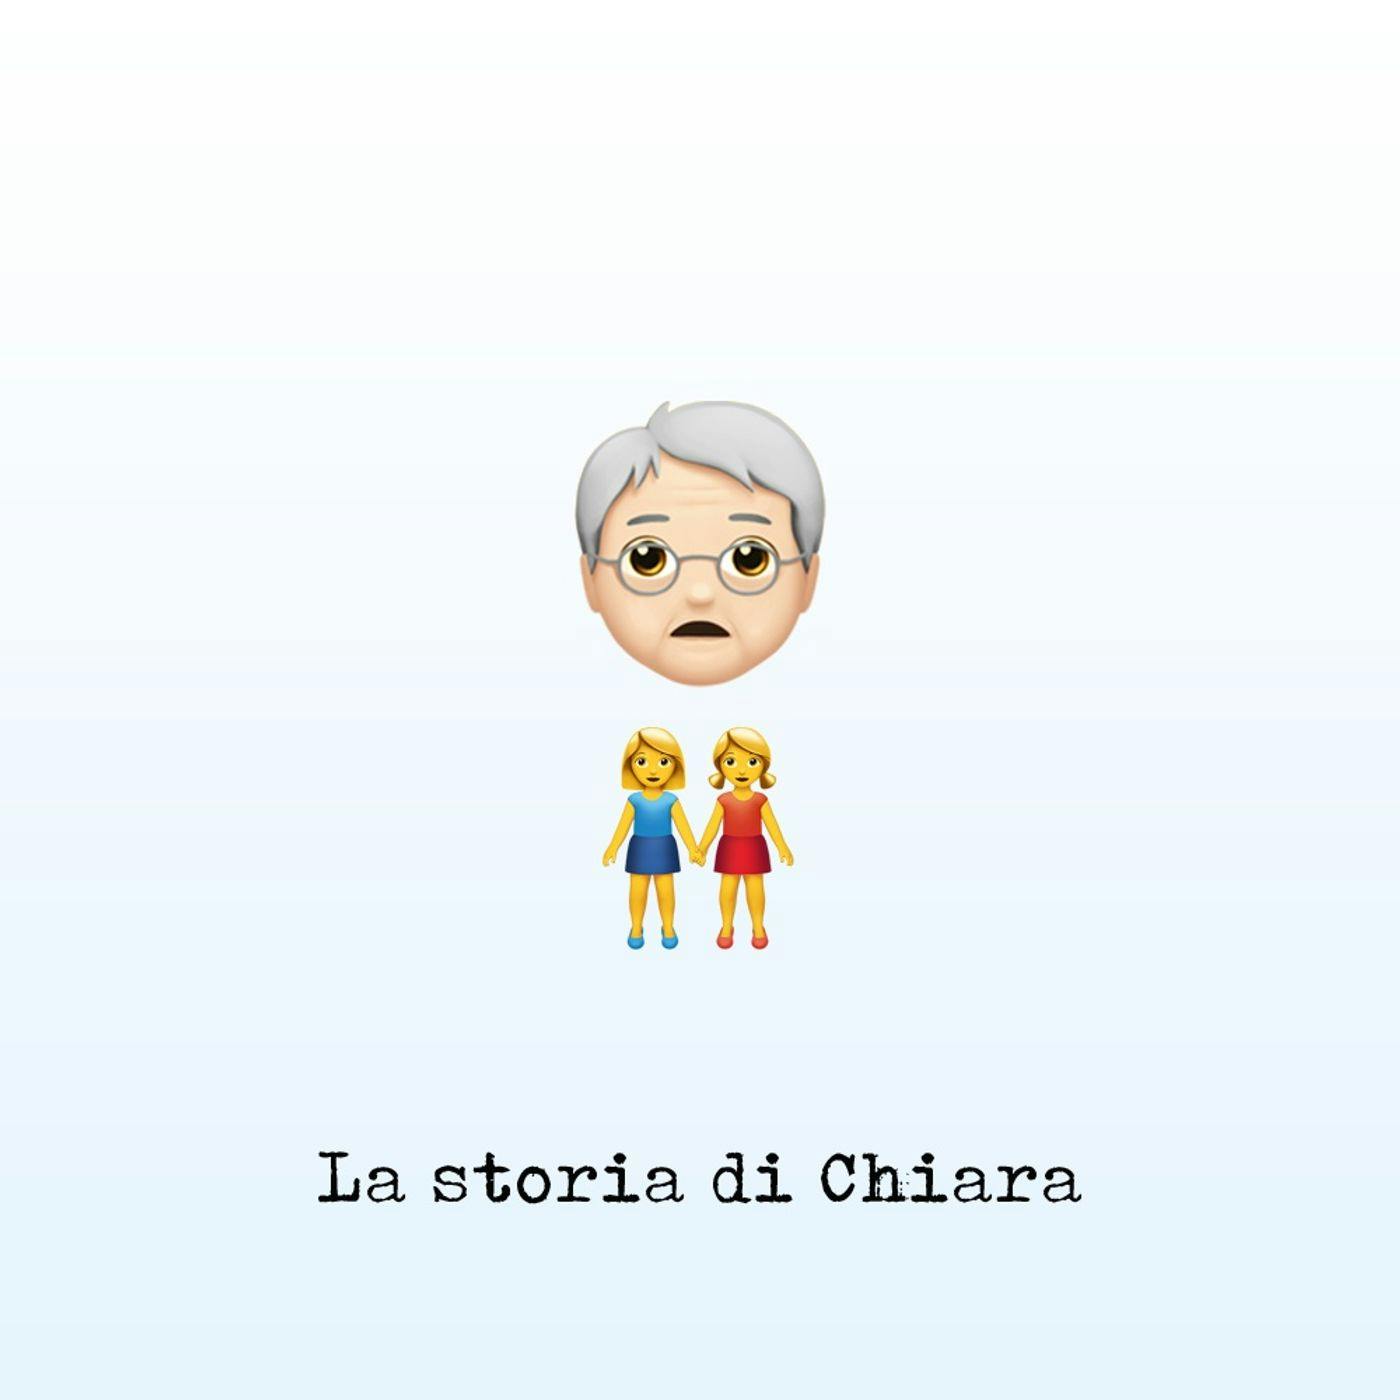 La storia di Chiara